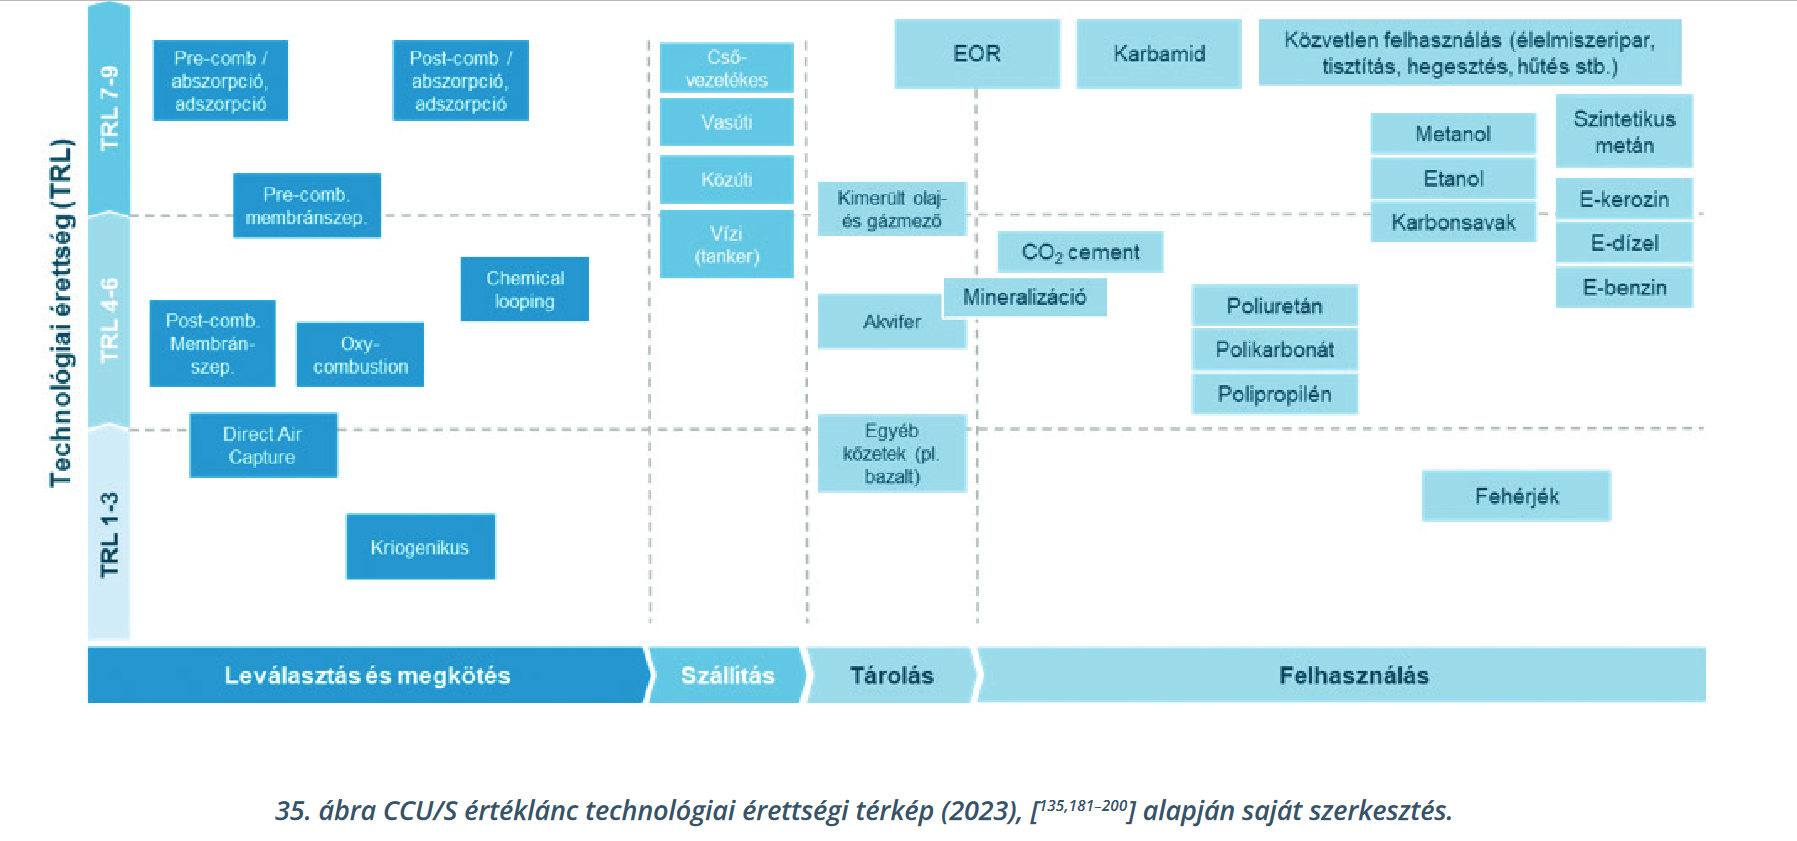 CCU/S értéklánc technológiai érettségi térkép (2023) a Fehér könyv alapján